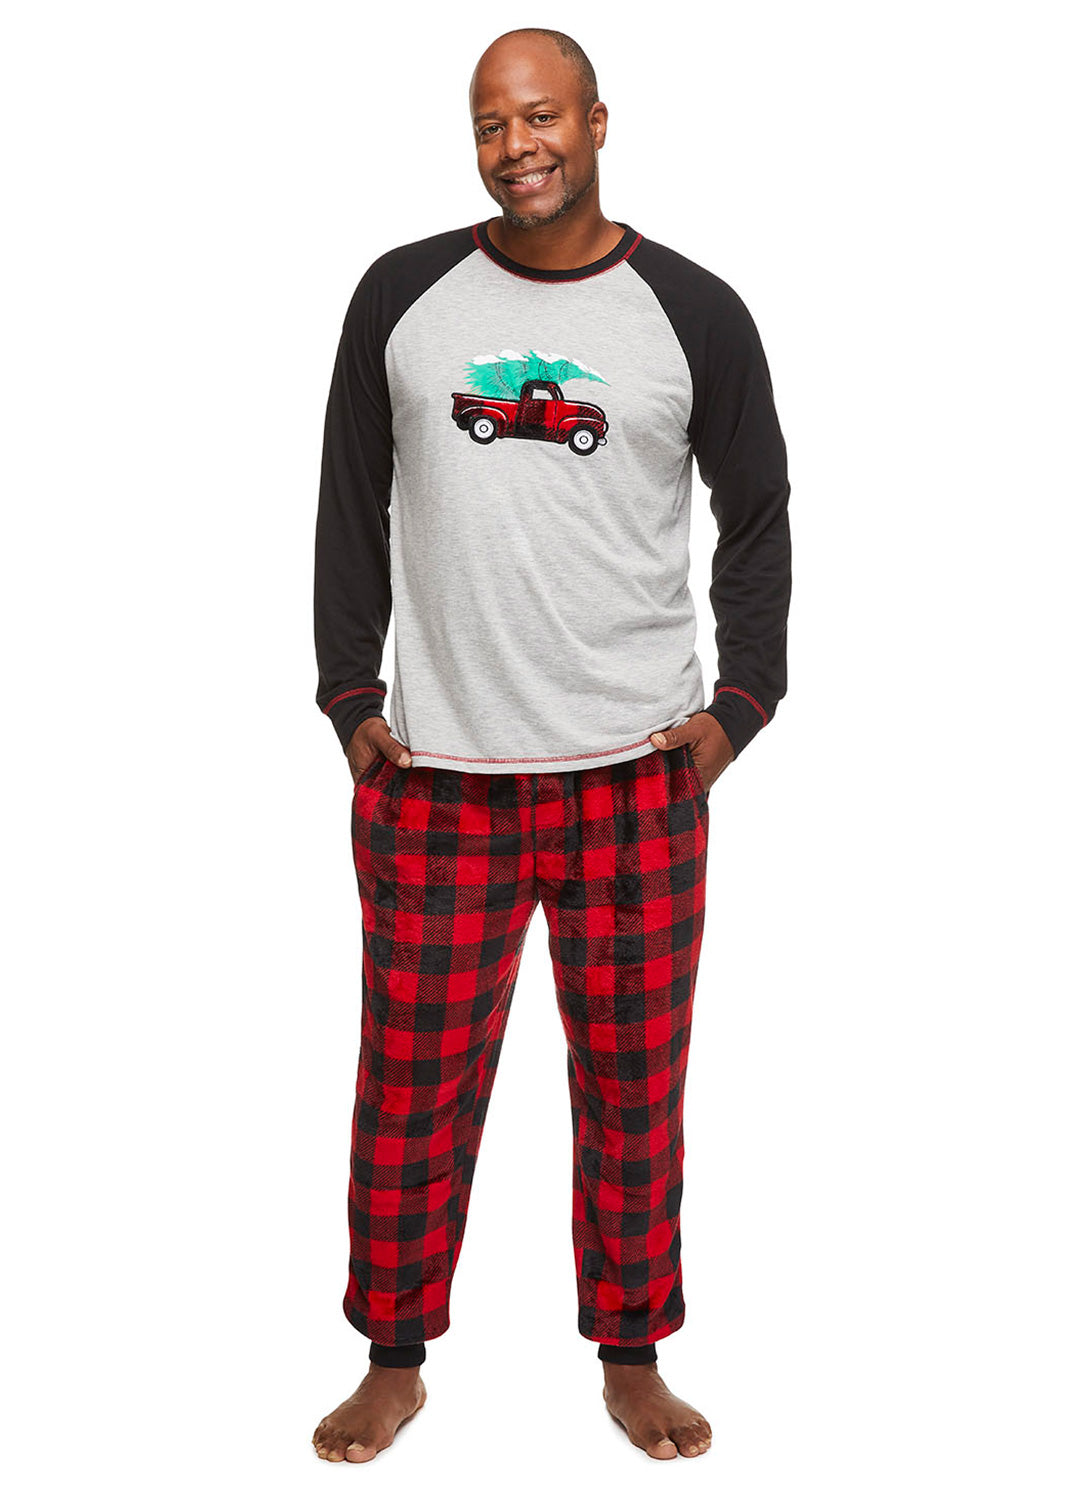 Man wearing Red Truck Sleepwear Pajama Set